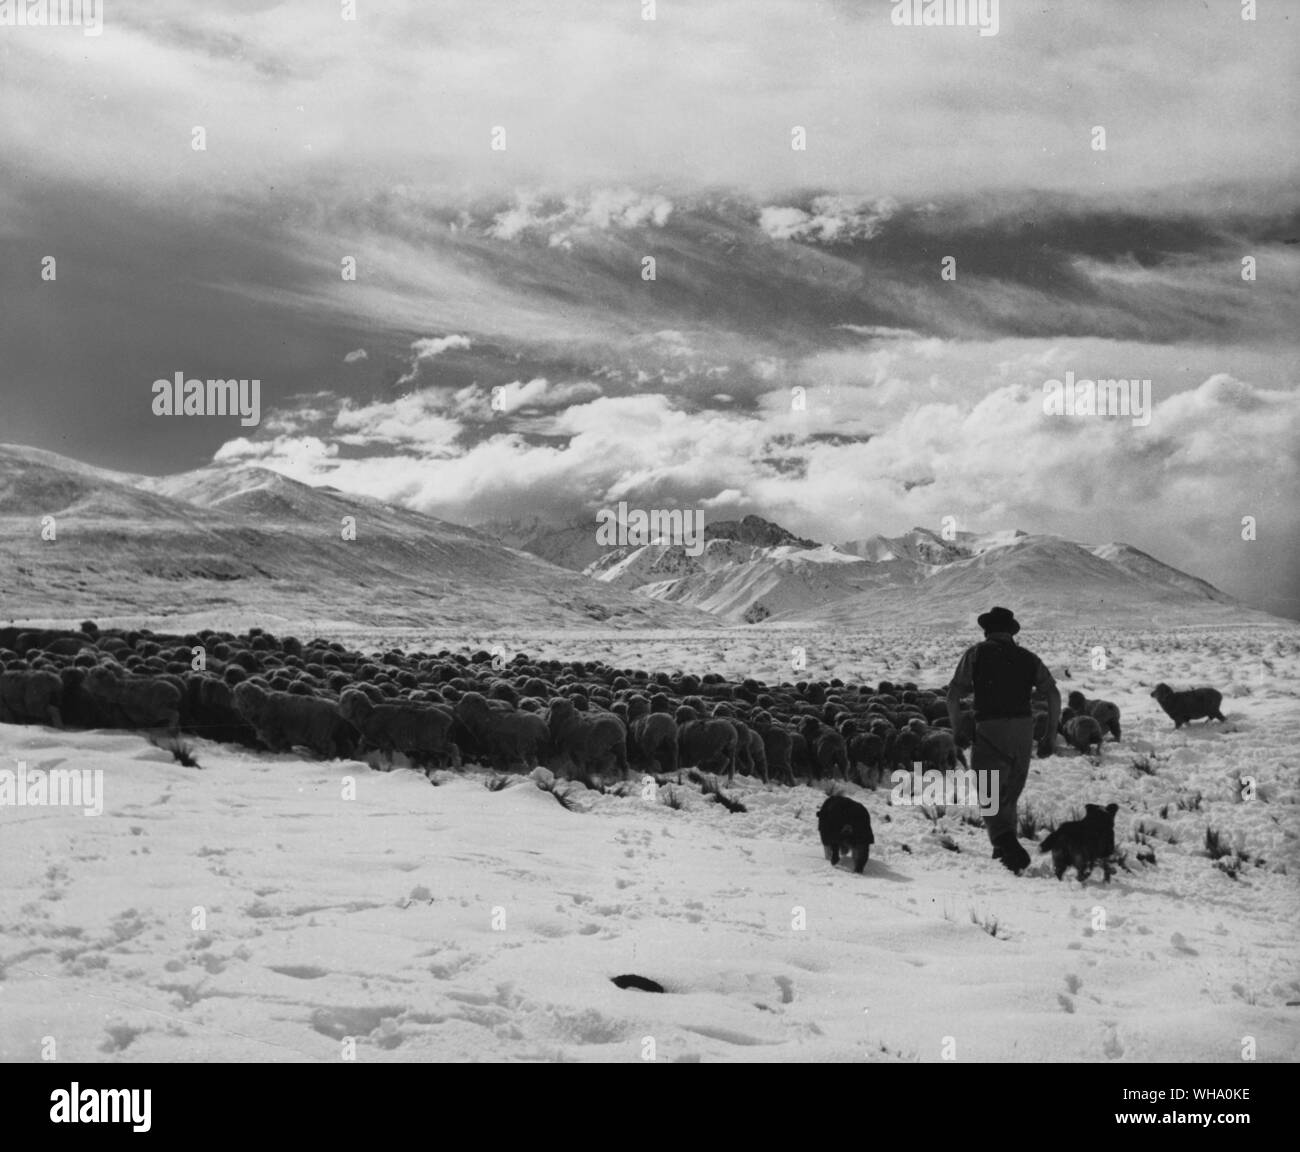 Les chiens de berger et la collecte d'un 'mob' de moutons pour se nourrir. Rassemblement d'automne sur une nouvelle Zélande. Banque D'Images